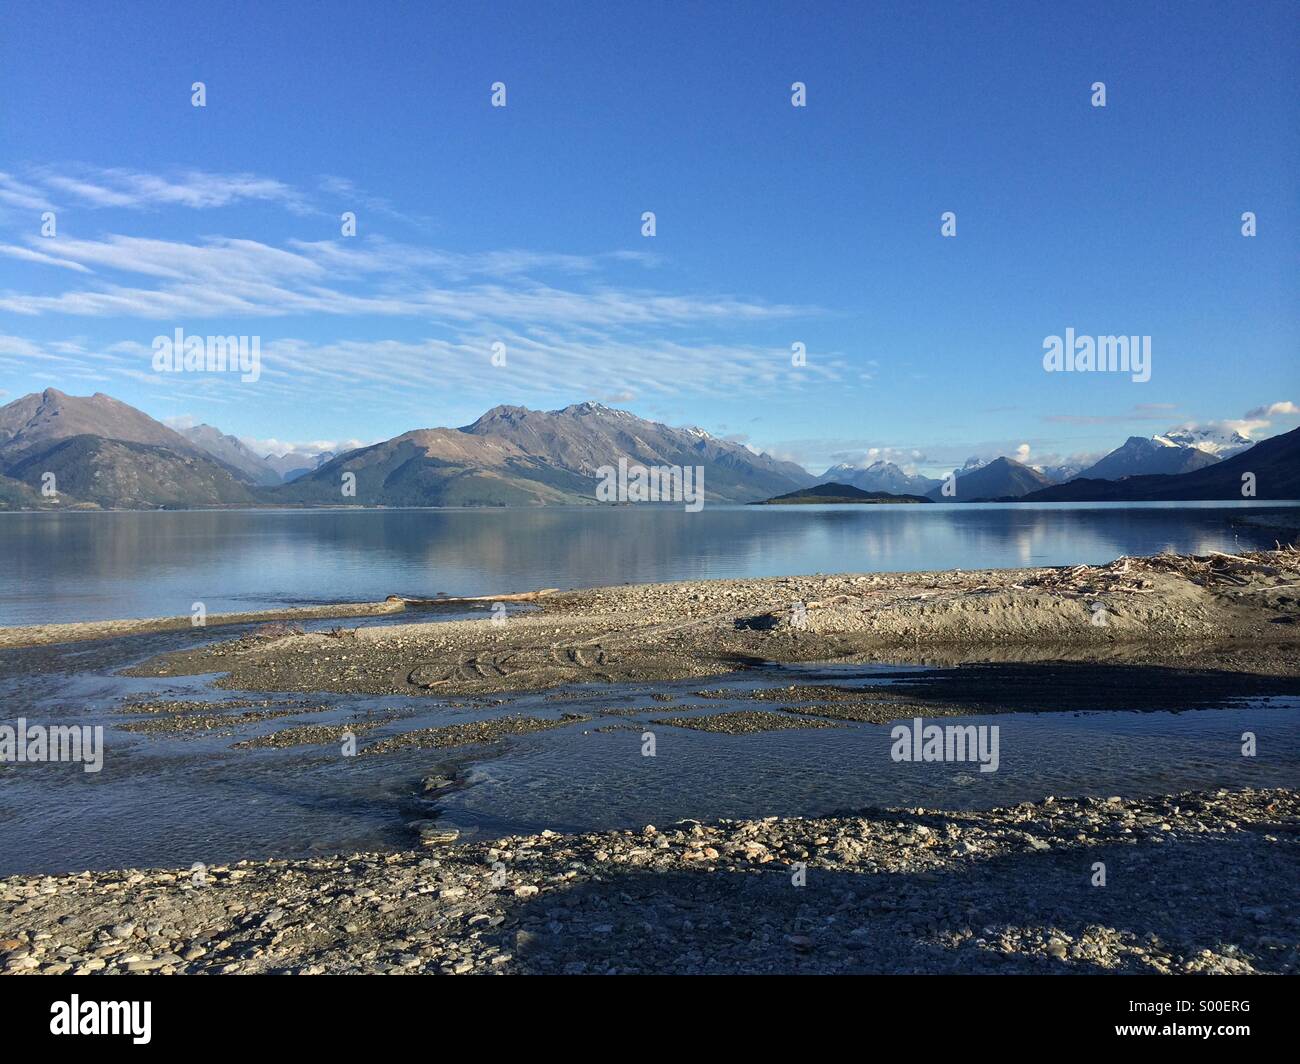 Lake Wakatipu, Queenstown, New Zealand. Stock Photo